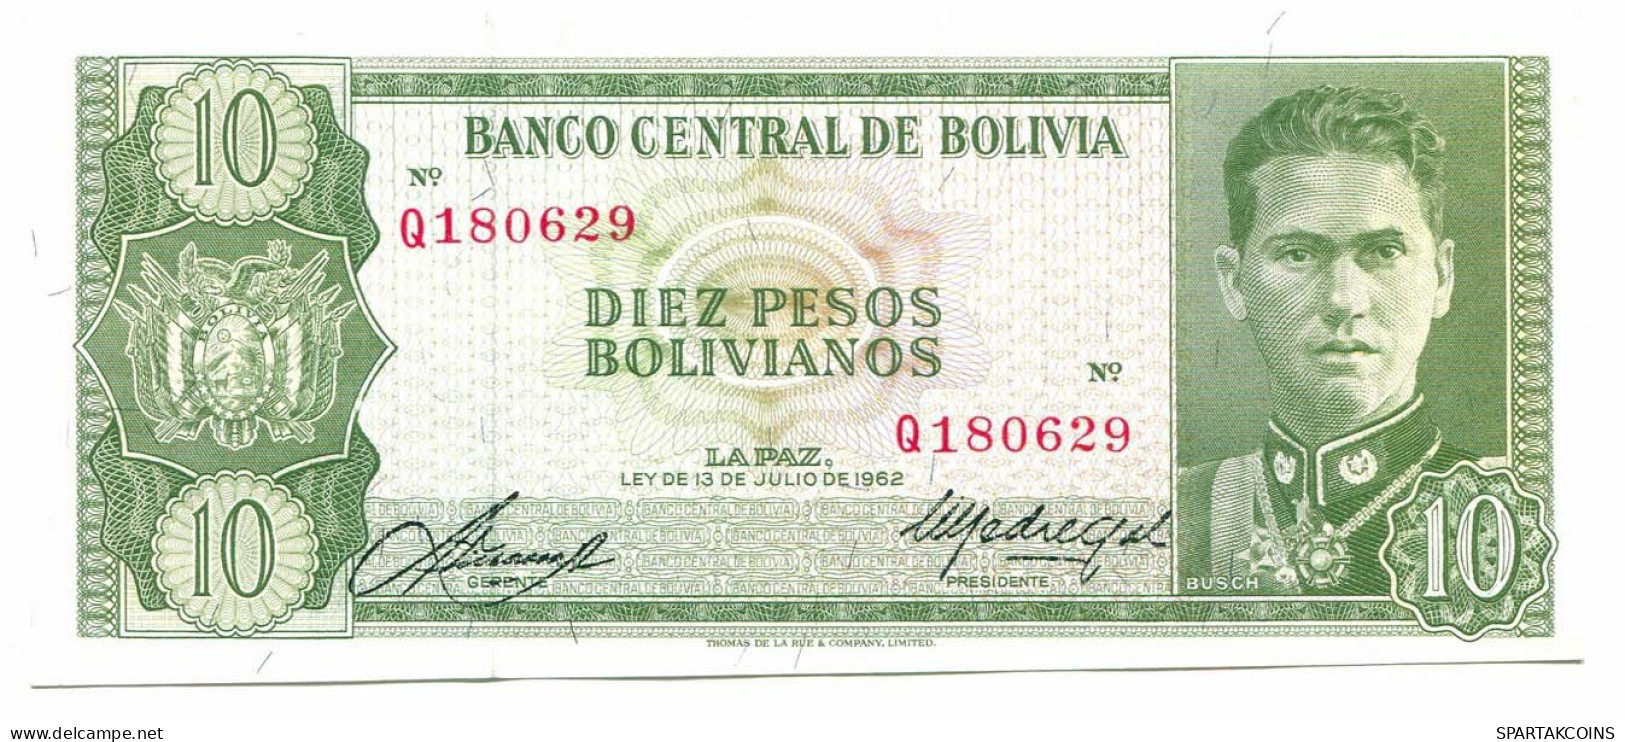 BOLIVIA 10 BOLIVIANOS 1962 SERIE Q AUNC Paper Money Banknote #P10792.4 - Lokale Ausgaben